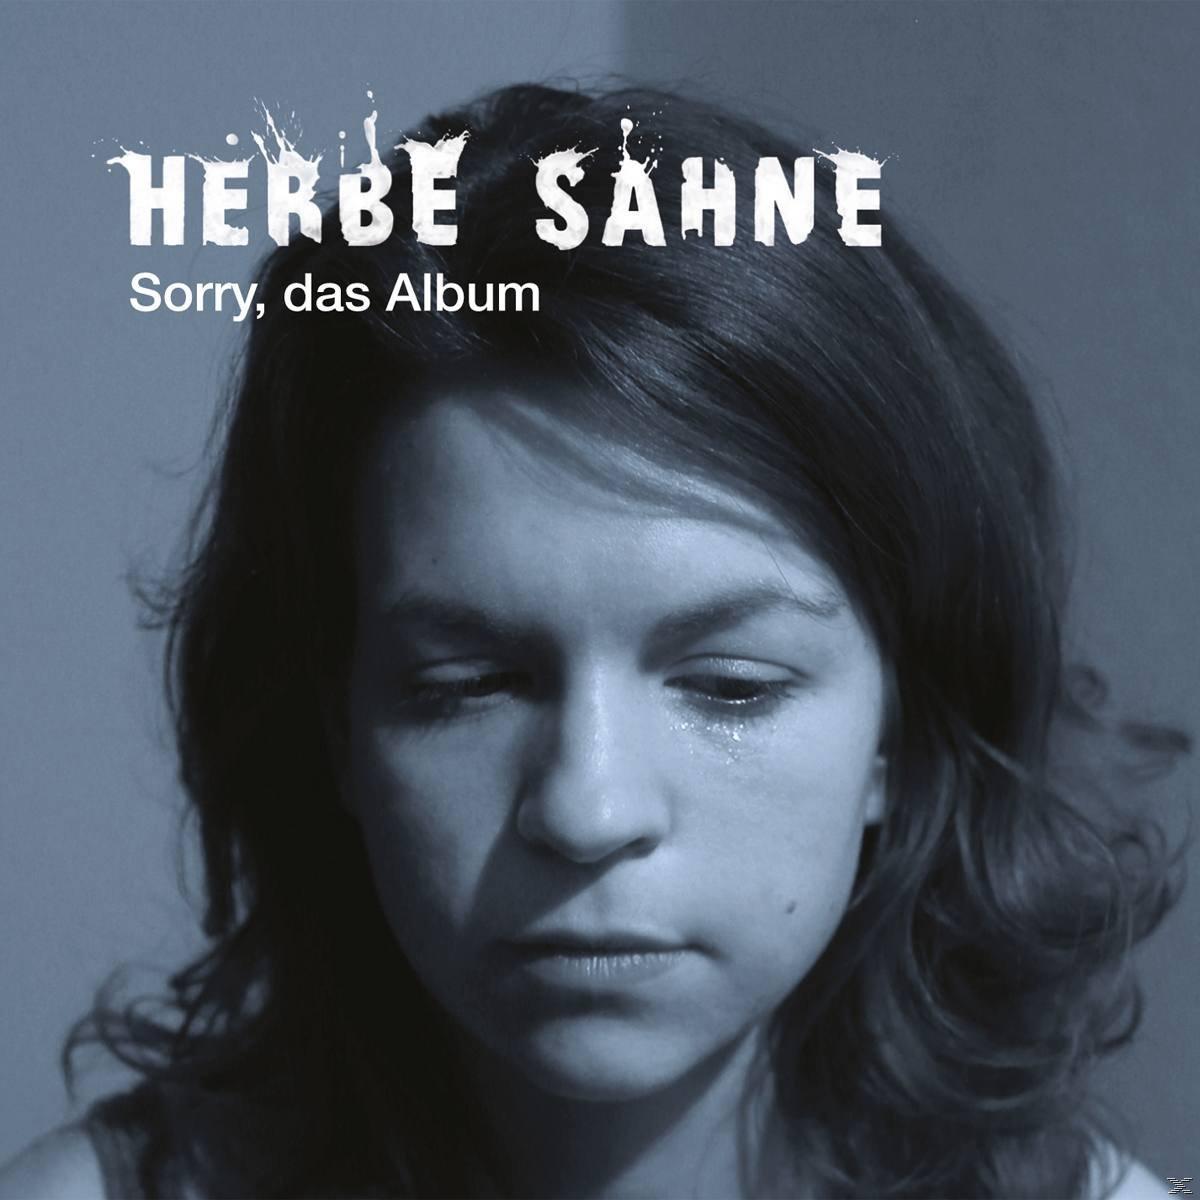 Herbe (CD) Sahne Album - Das - Sorry,